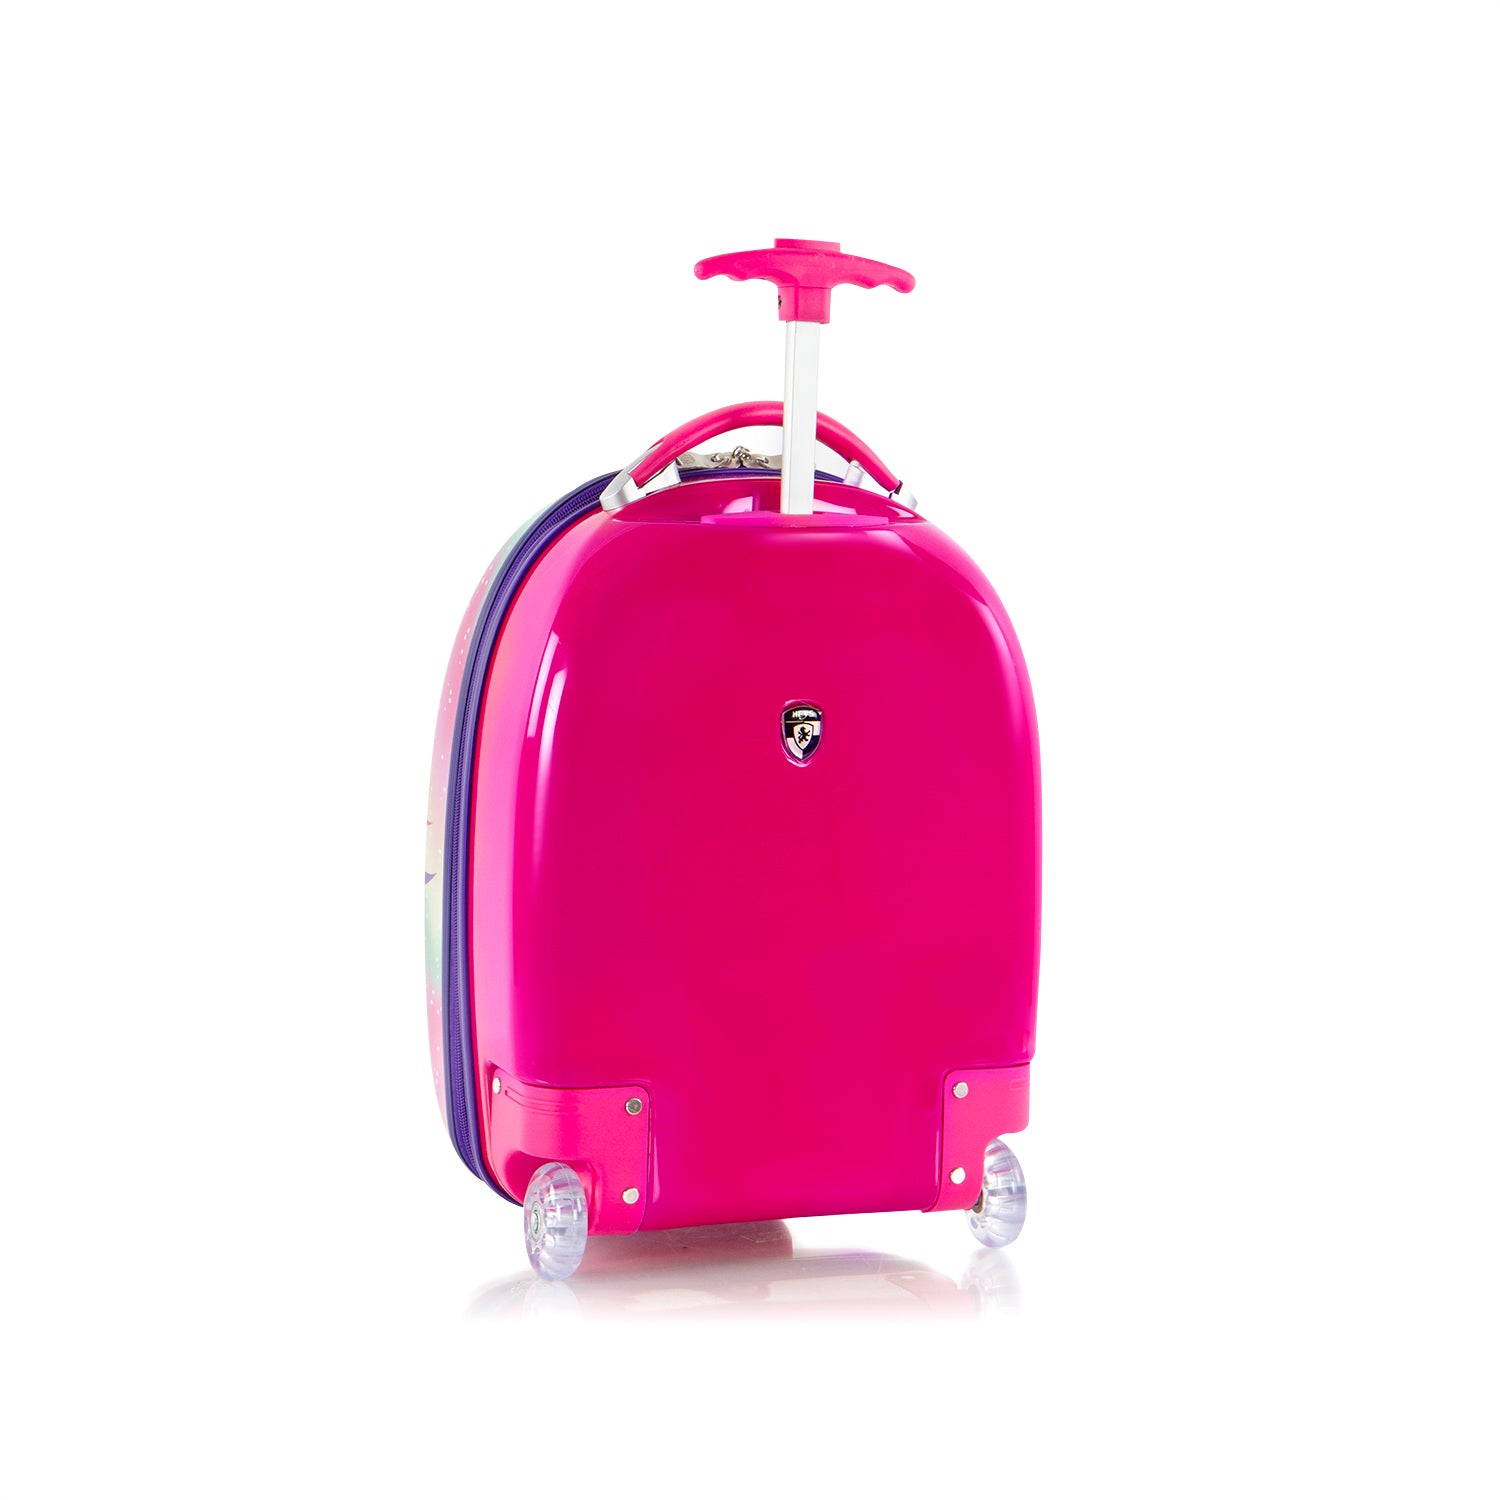 Kids Fashion Luggage - Unicorn | Kids Carry-On Luggage